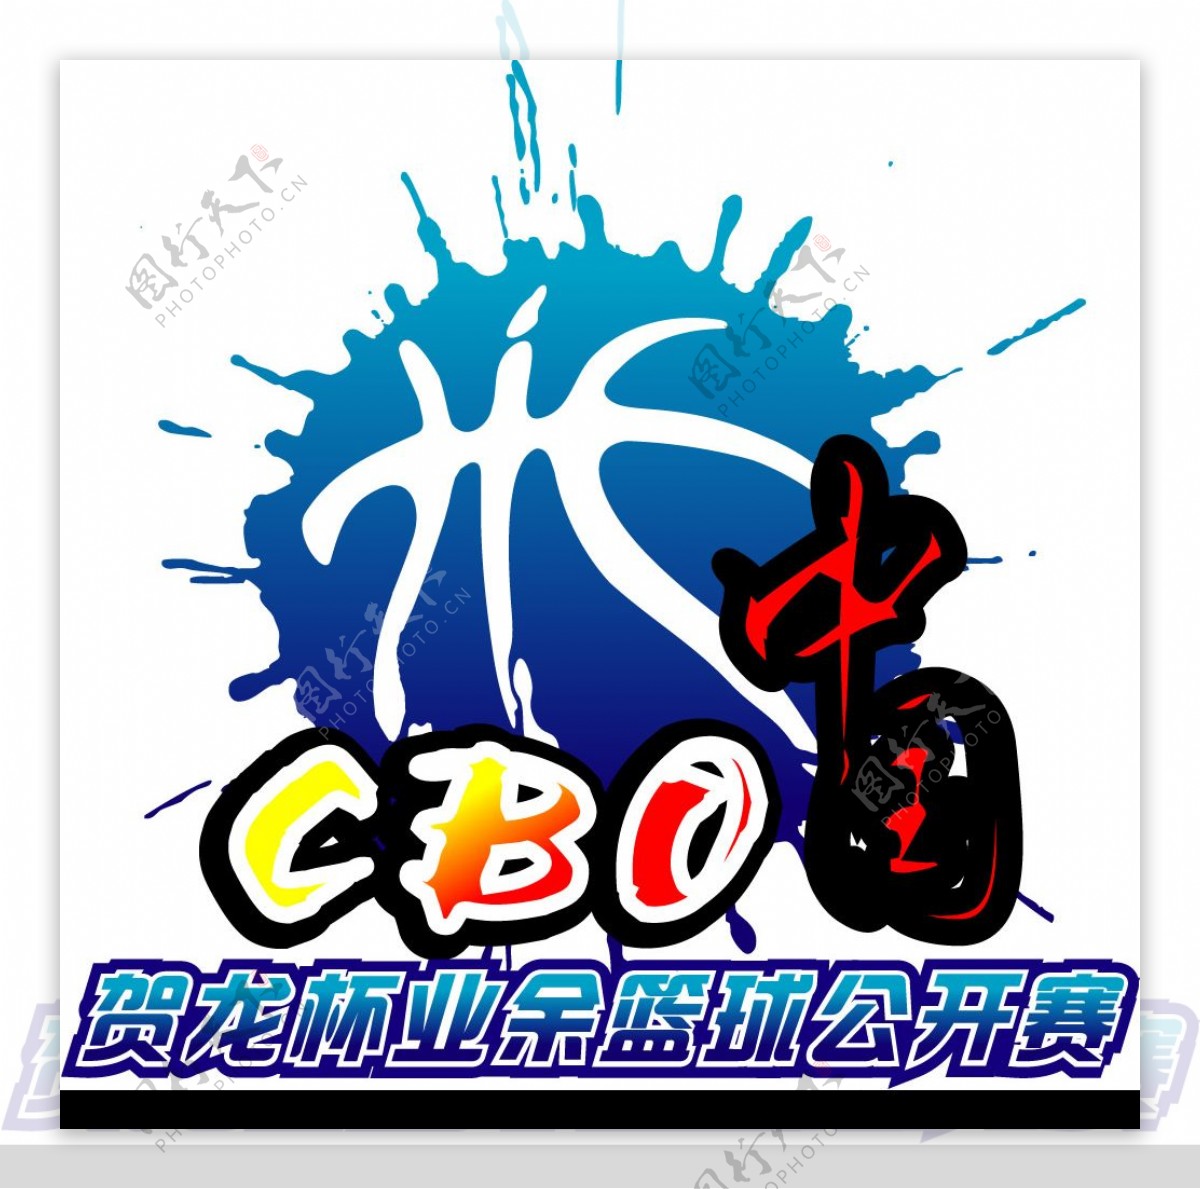 中国业余篮球公开赛LOGO图片